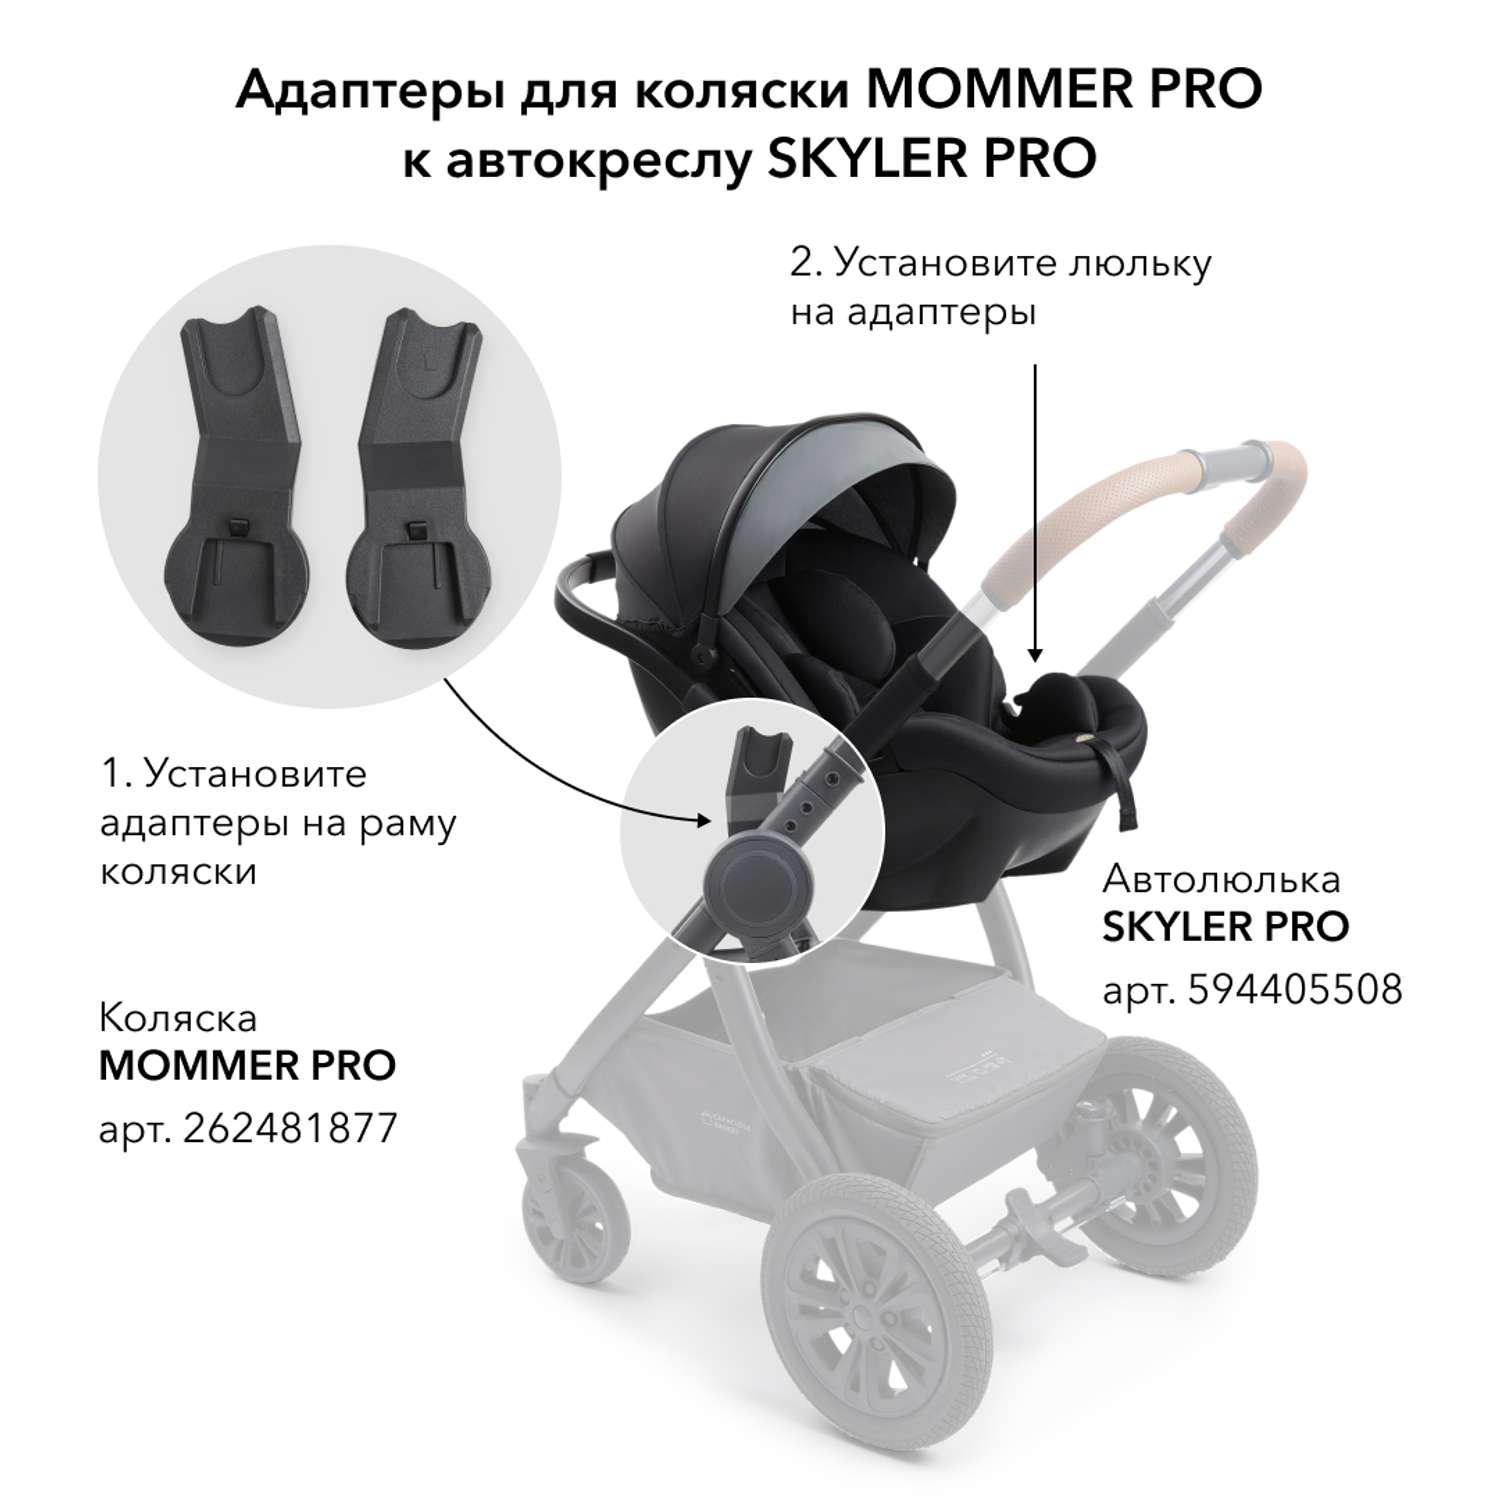 Mommer pro 3. Адаптер для коляски Happy Baby. Mommer Pro коляска. Адаптер для коляски Mommer. Адаптеры для автолюльки Happy Baby.